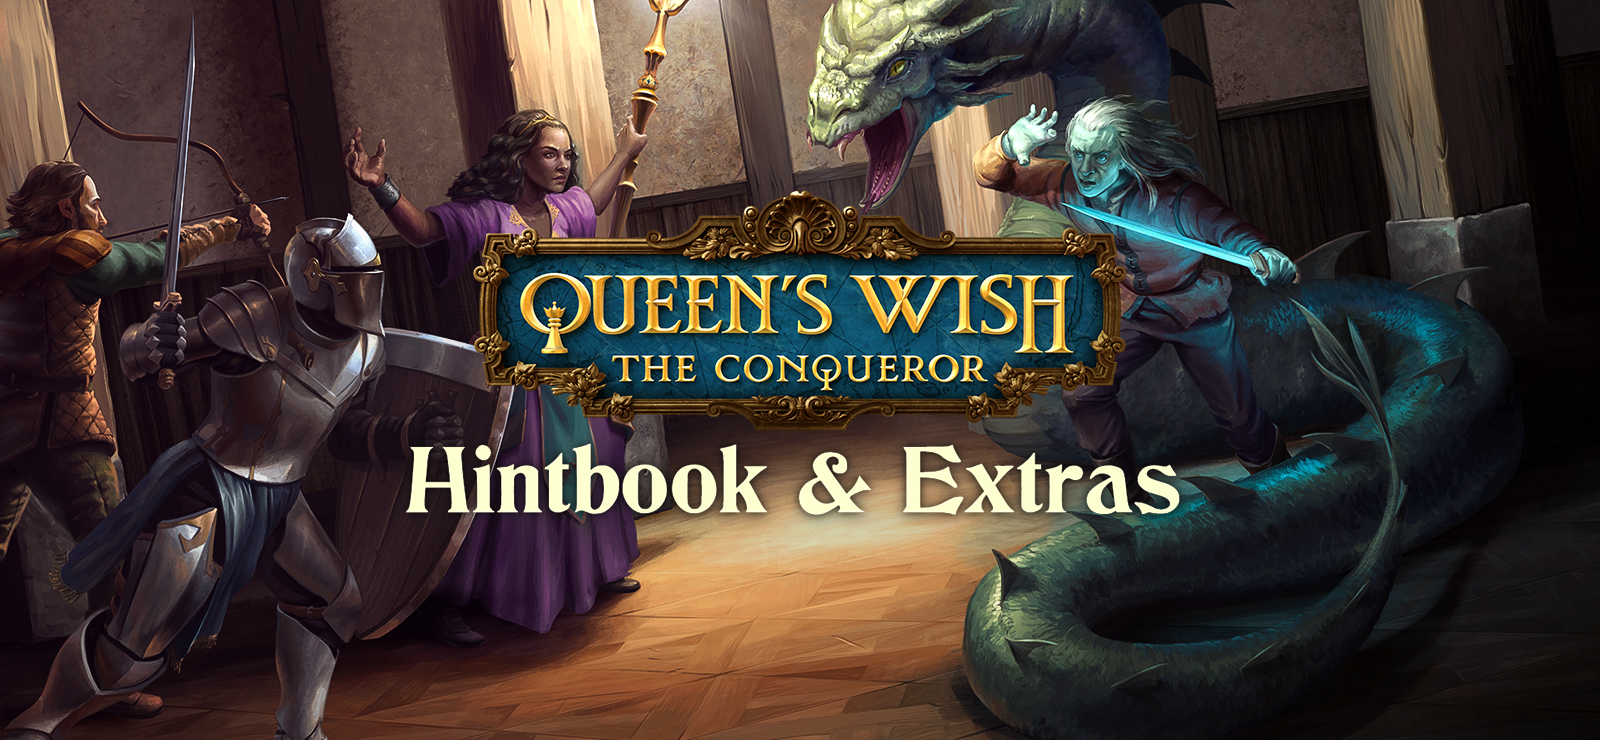 Queen's Wish Hintbook & Extras